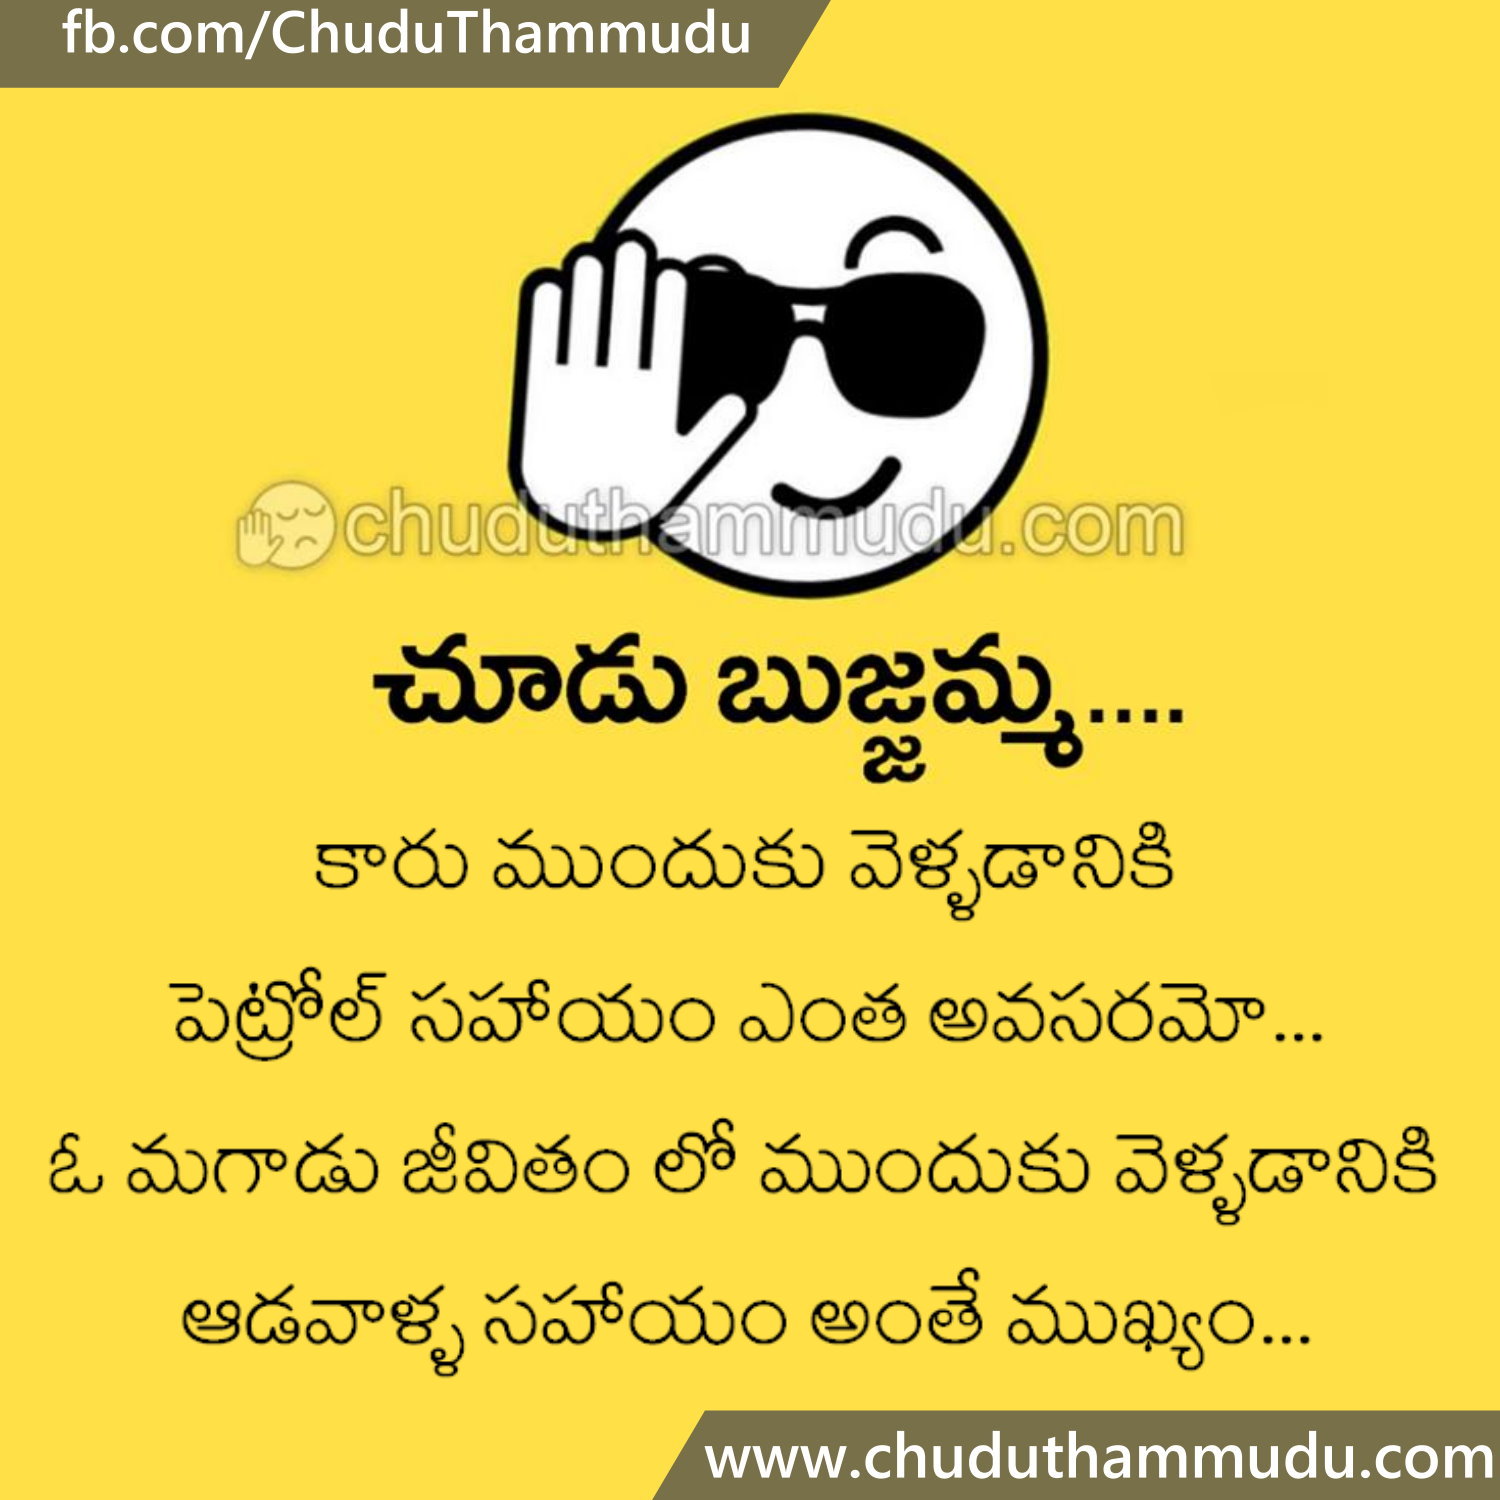 Telugu Funny Lines on La s Help